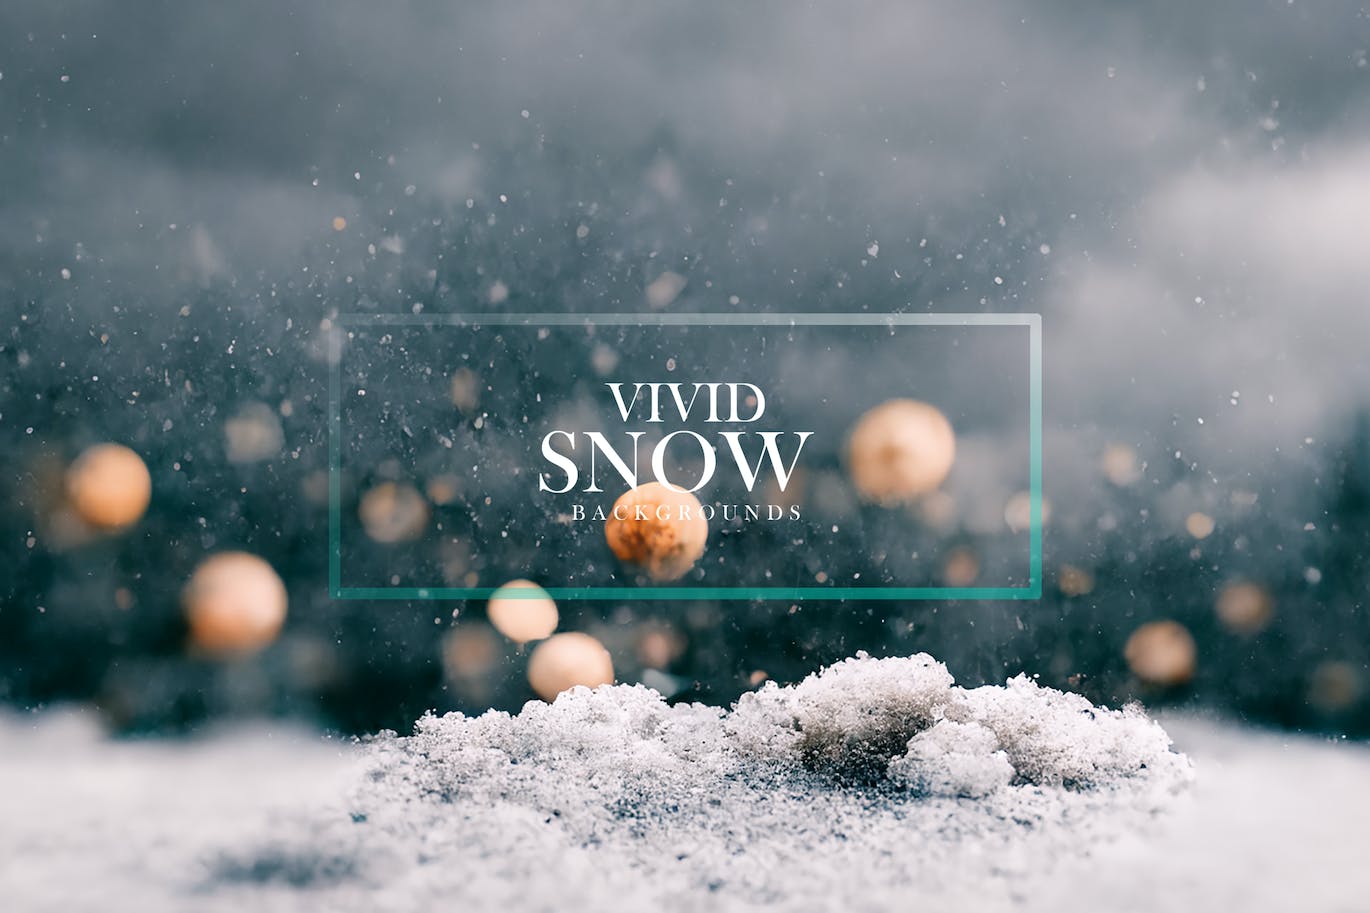 清晰逼真冬天白雪背景 Vivid Snow Backgrounds 图片素材 第2张